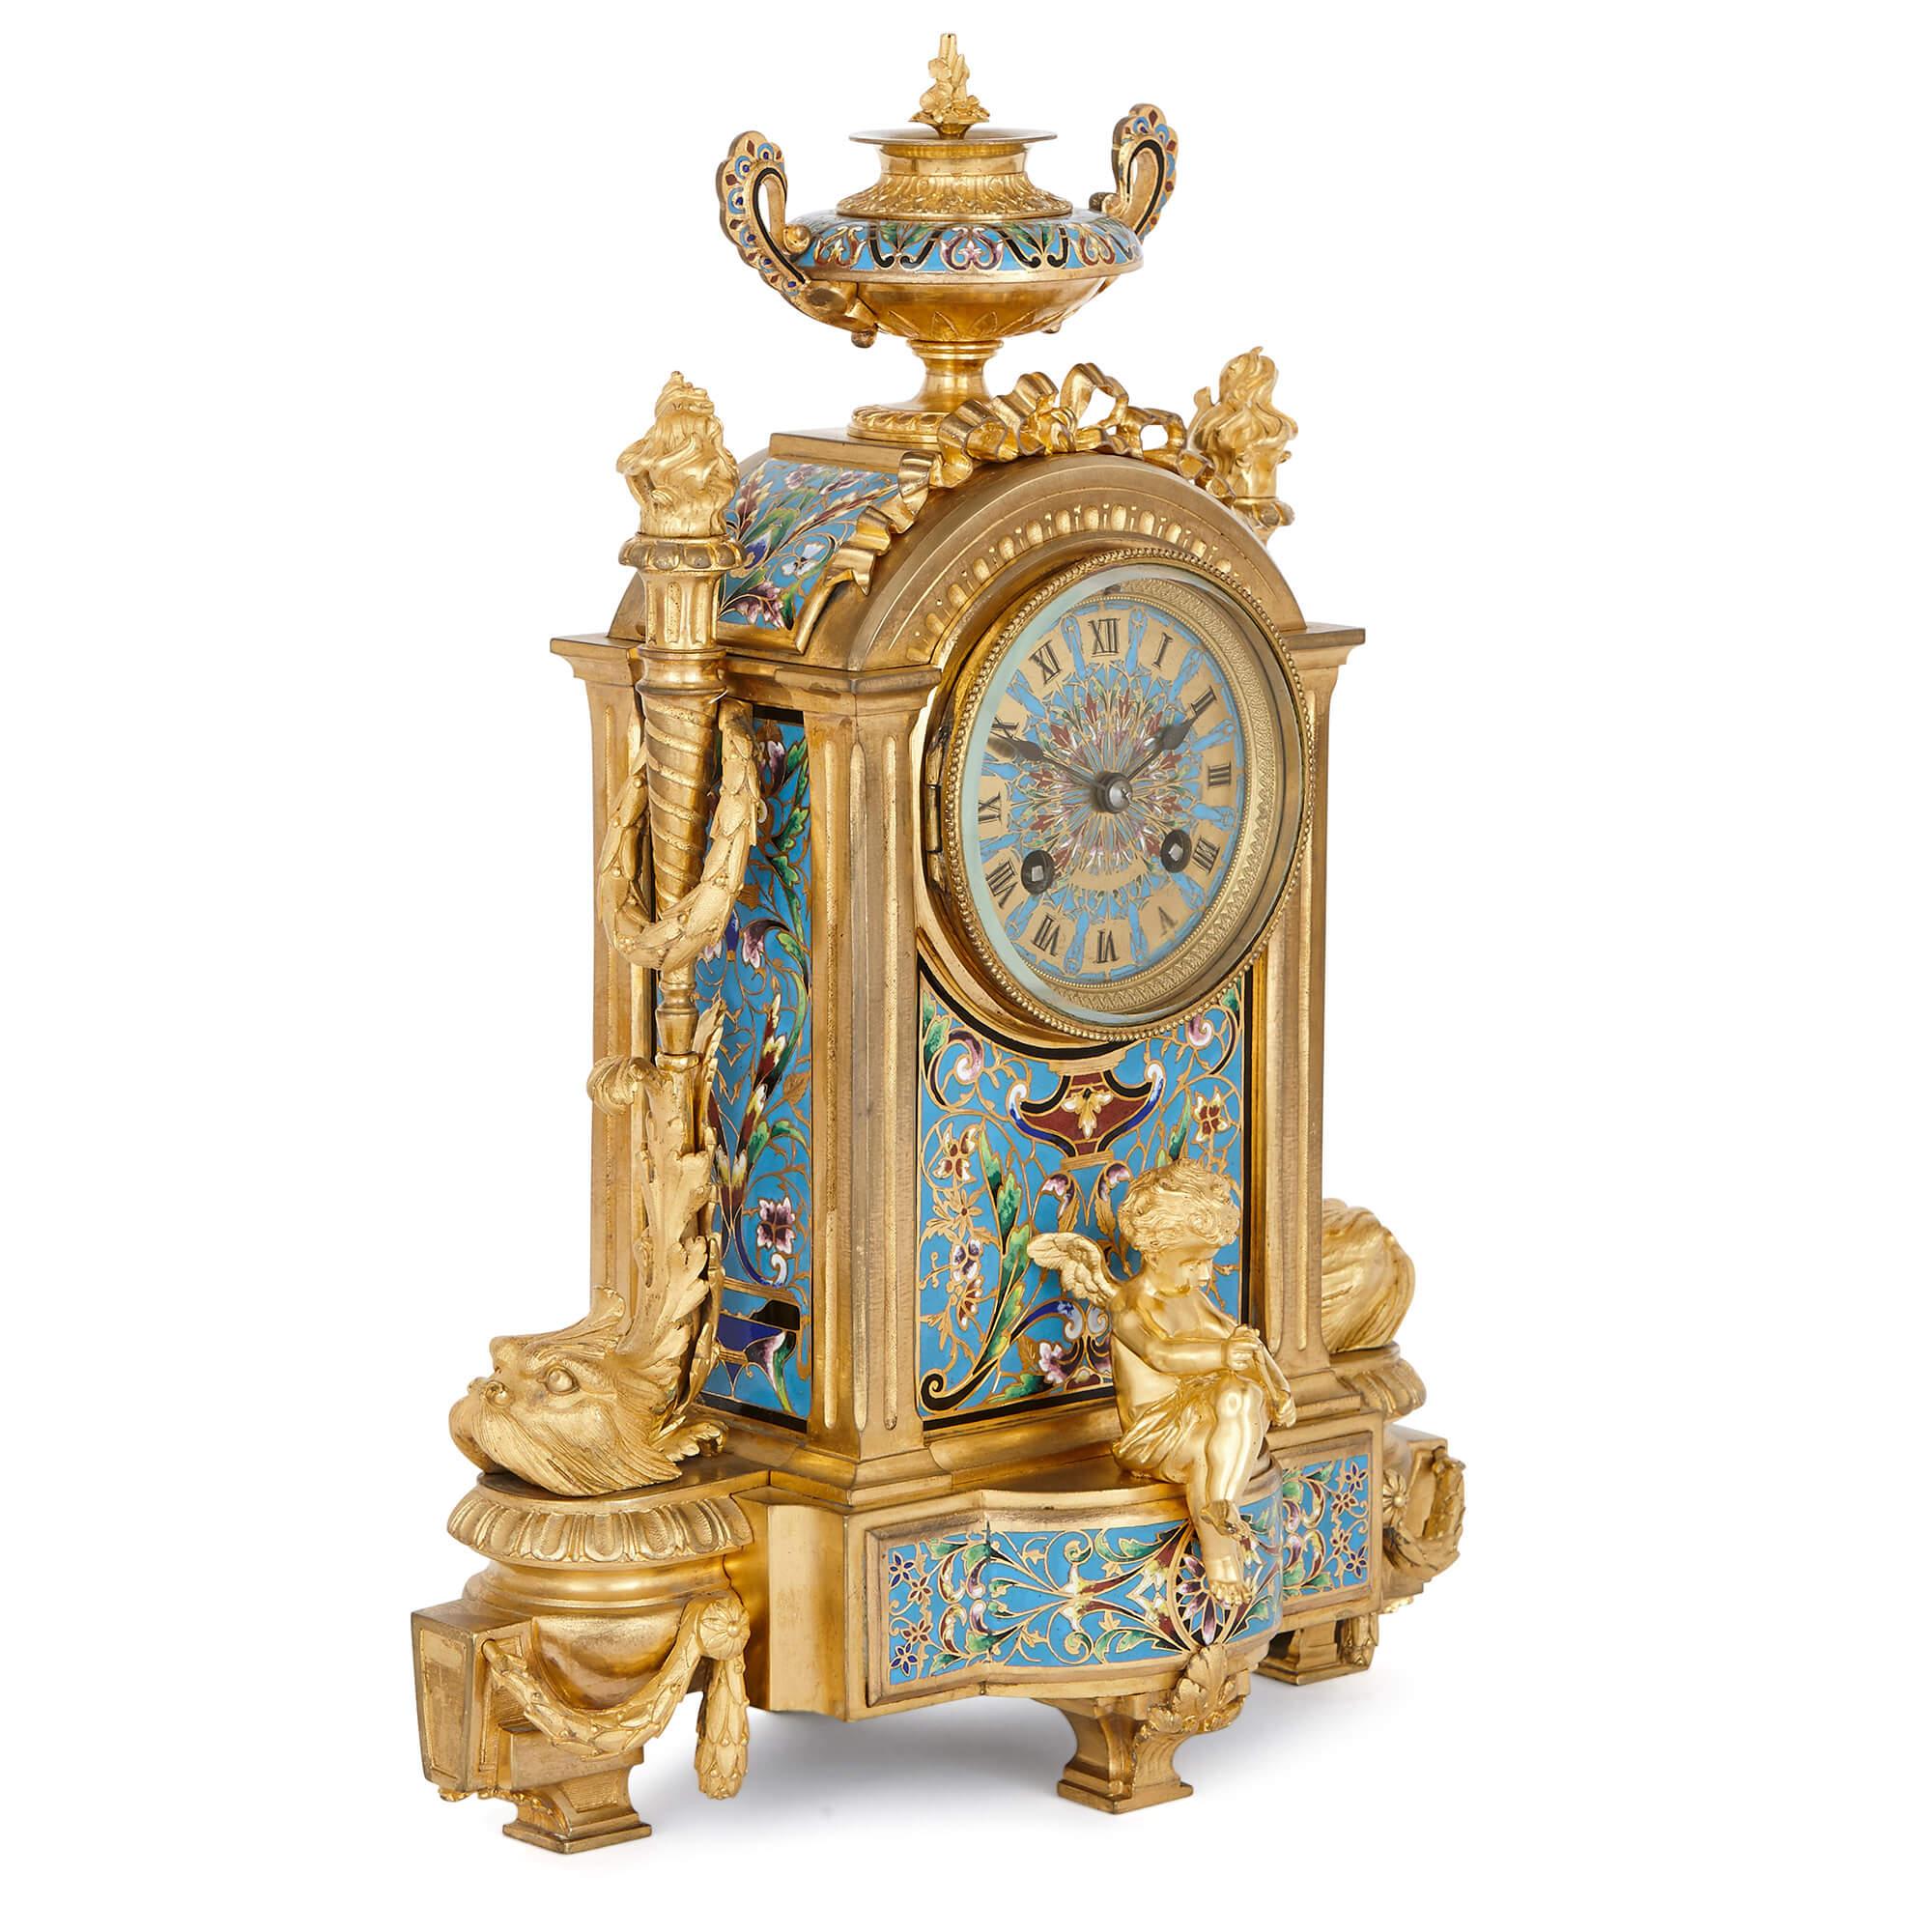 Ce merveilleux ensemble d'horloges en émail cloisonné est une œuvre d'art de style néoclassique : chaque pièce est minutieusement appliquée avec des émaux turquoise et verts, réalisés selon la technique du cloisonnement.

L'ensemble se compose